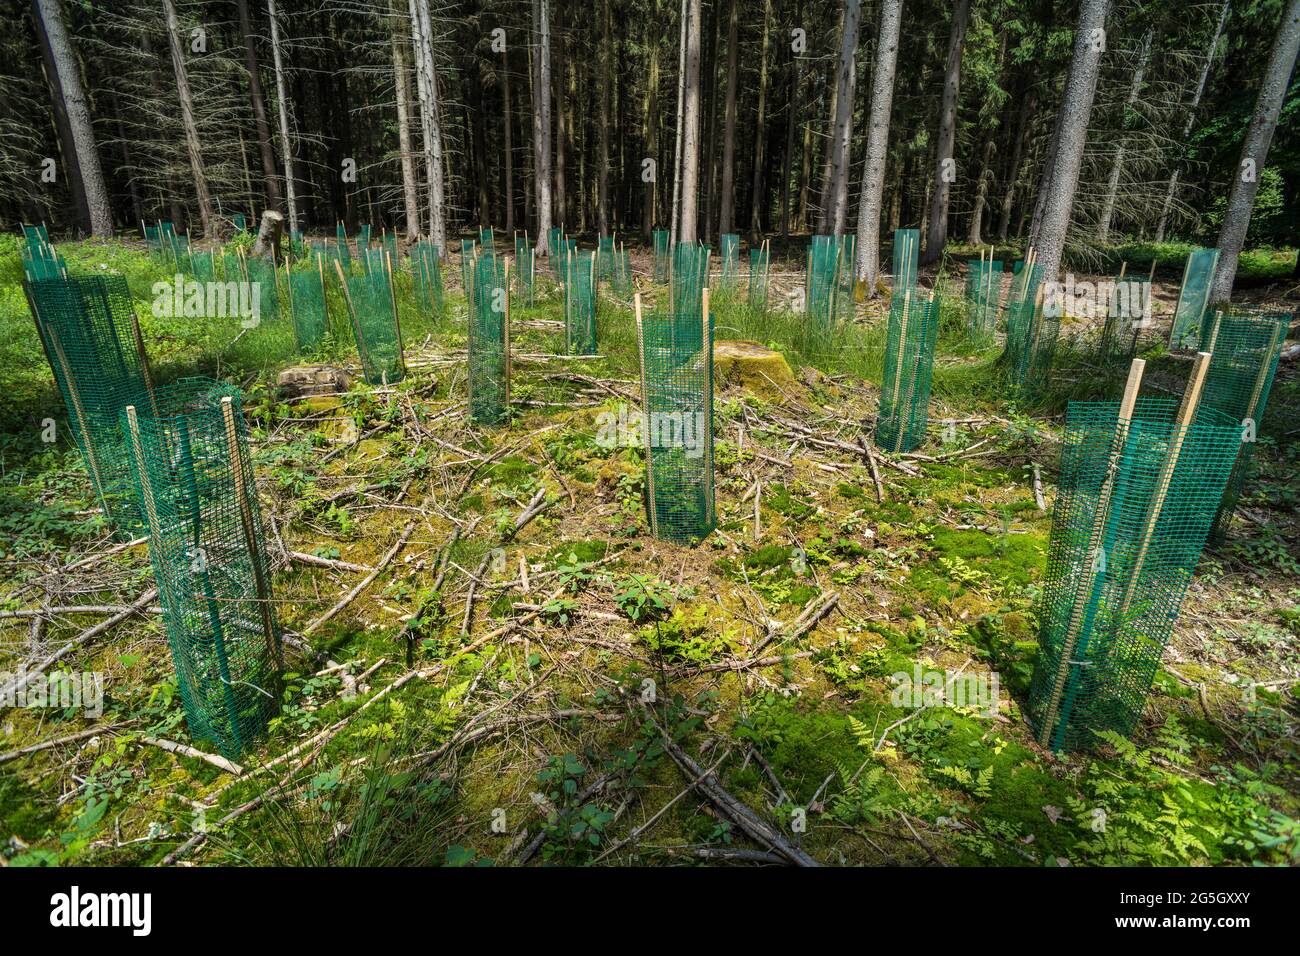 El plástico en el bosque como usado para proteger y apoyar los árboles recién plantados puede convertirse en un problema. Puede descomponerse y penetrar en el suelo. Contaminación Foto de stock